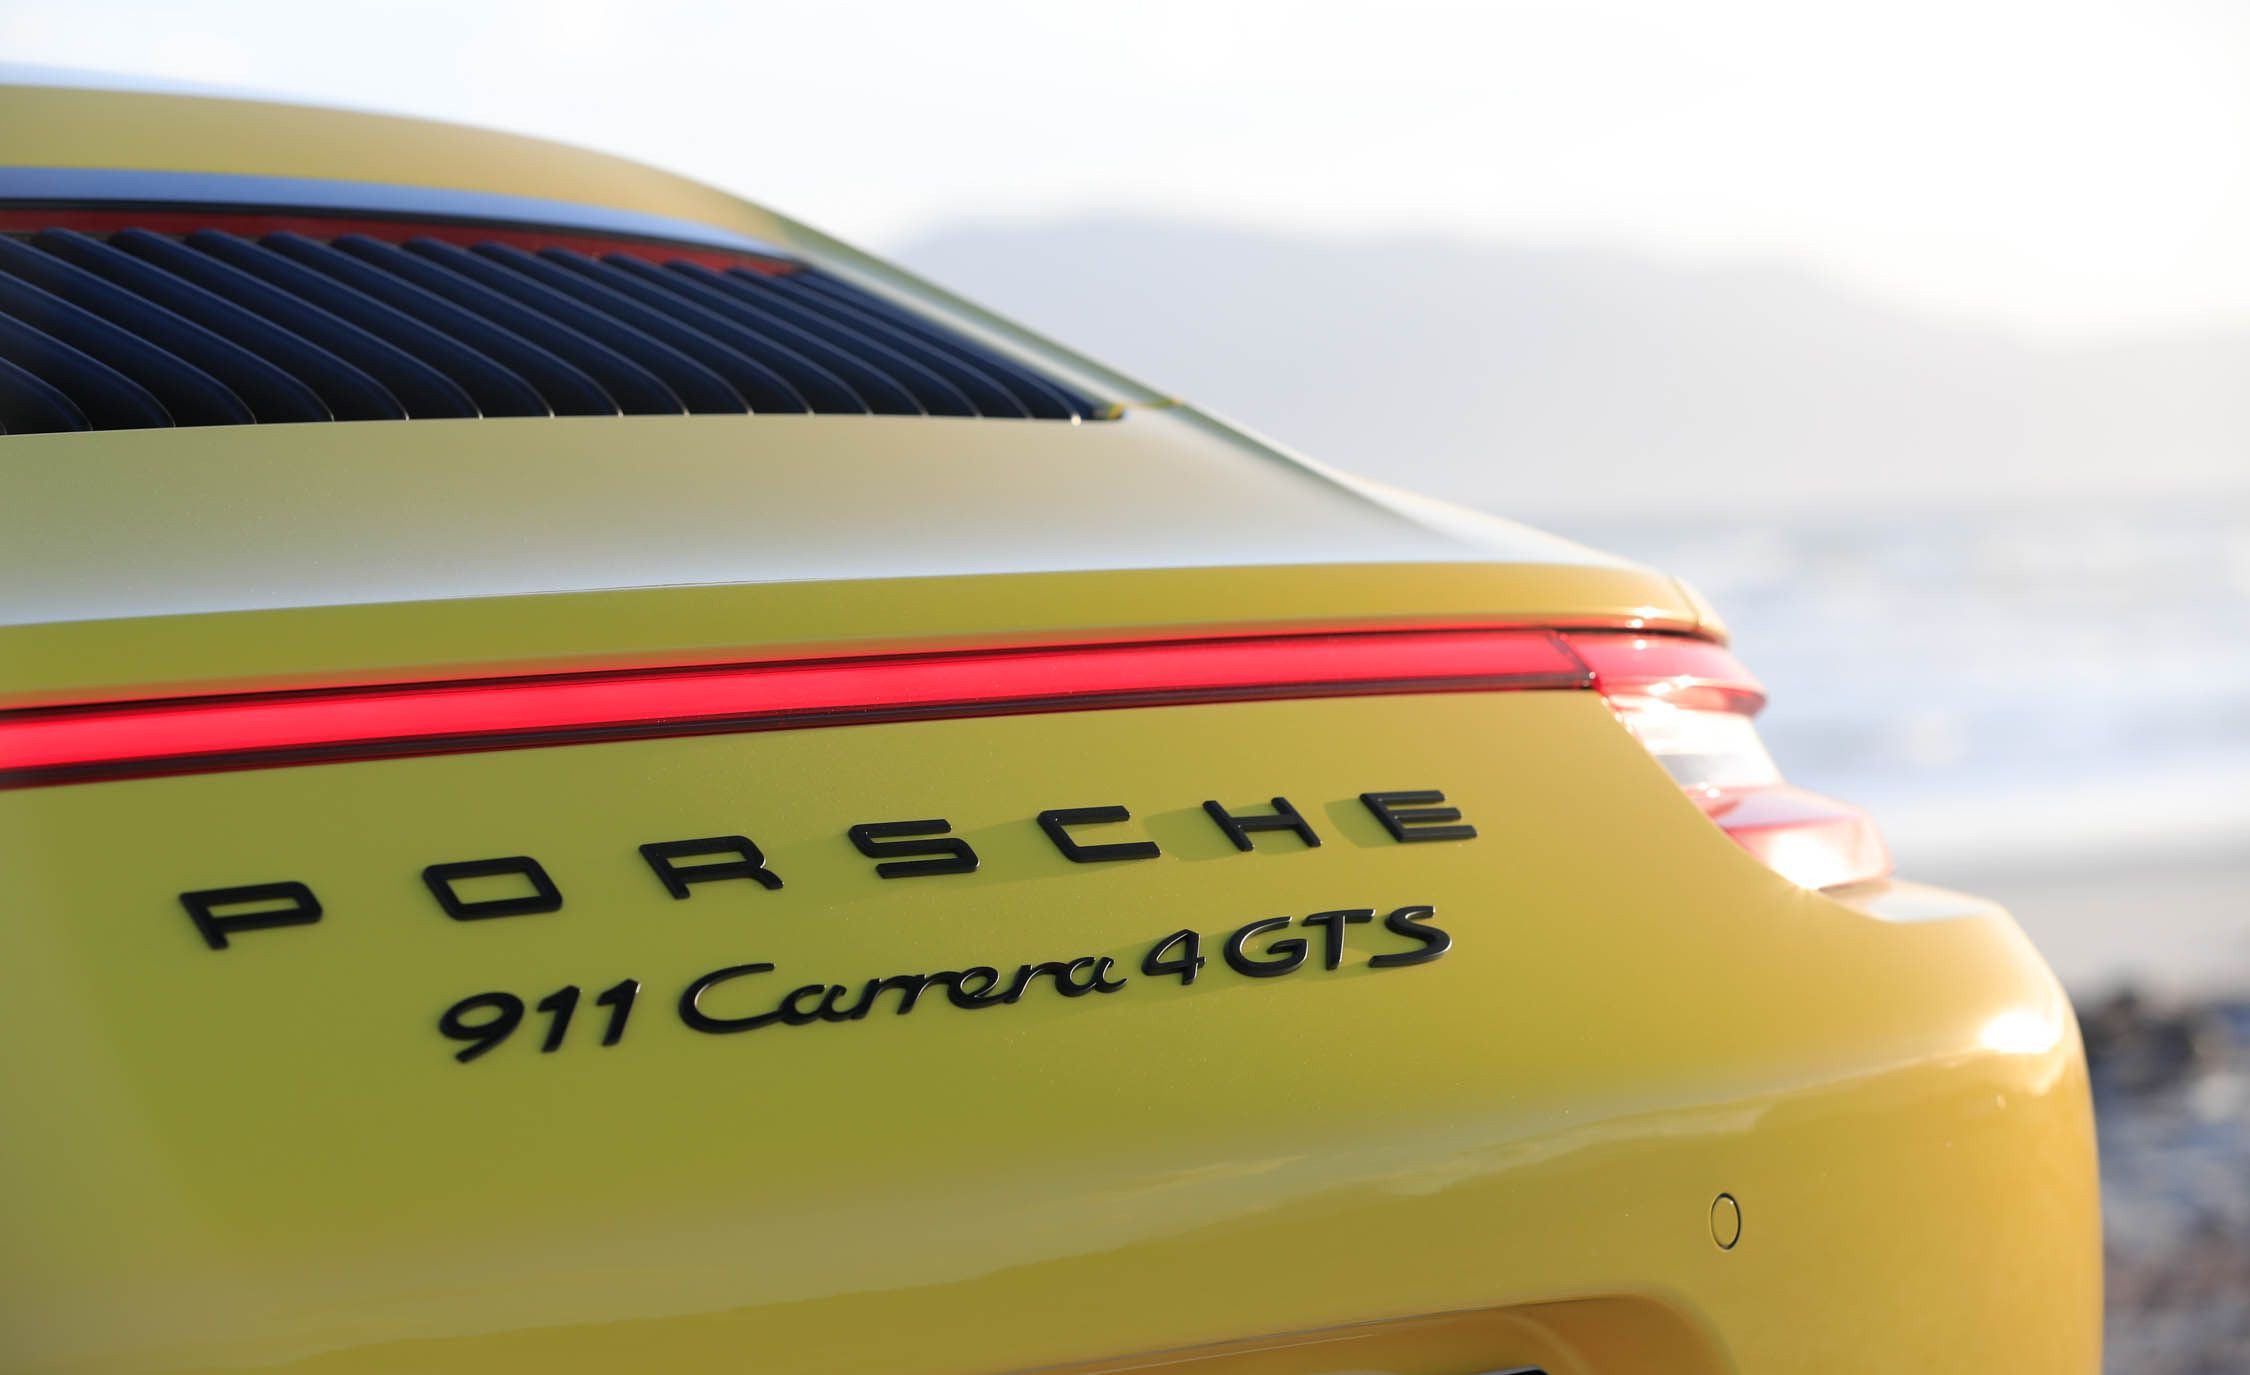 2017 Porsche 911 Carrera 4 GTS Cabriolet Exterior View Rear Emblem (View 96 of 97)